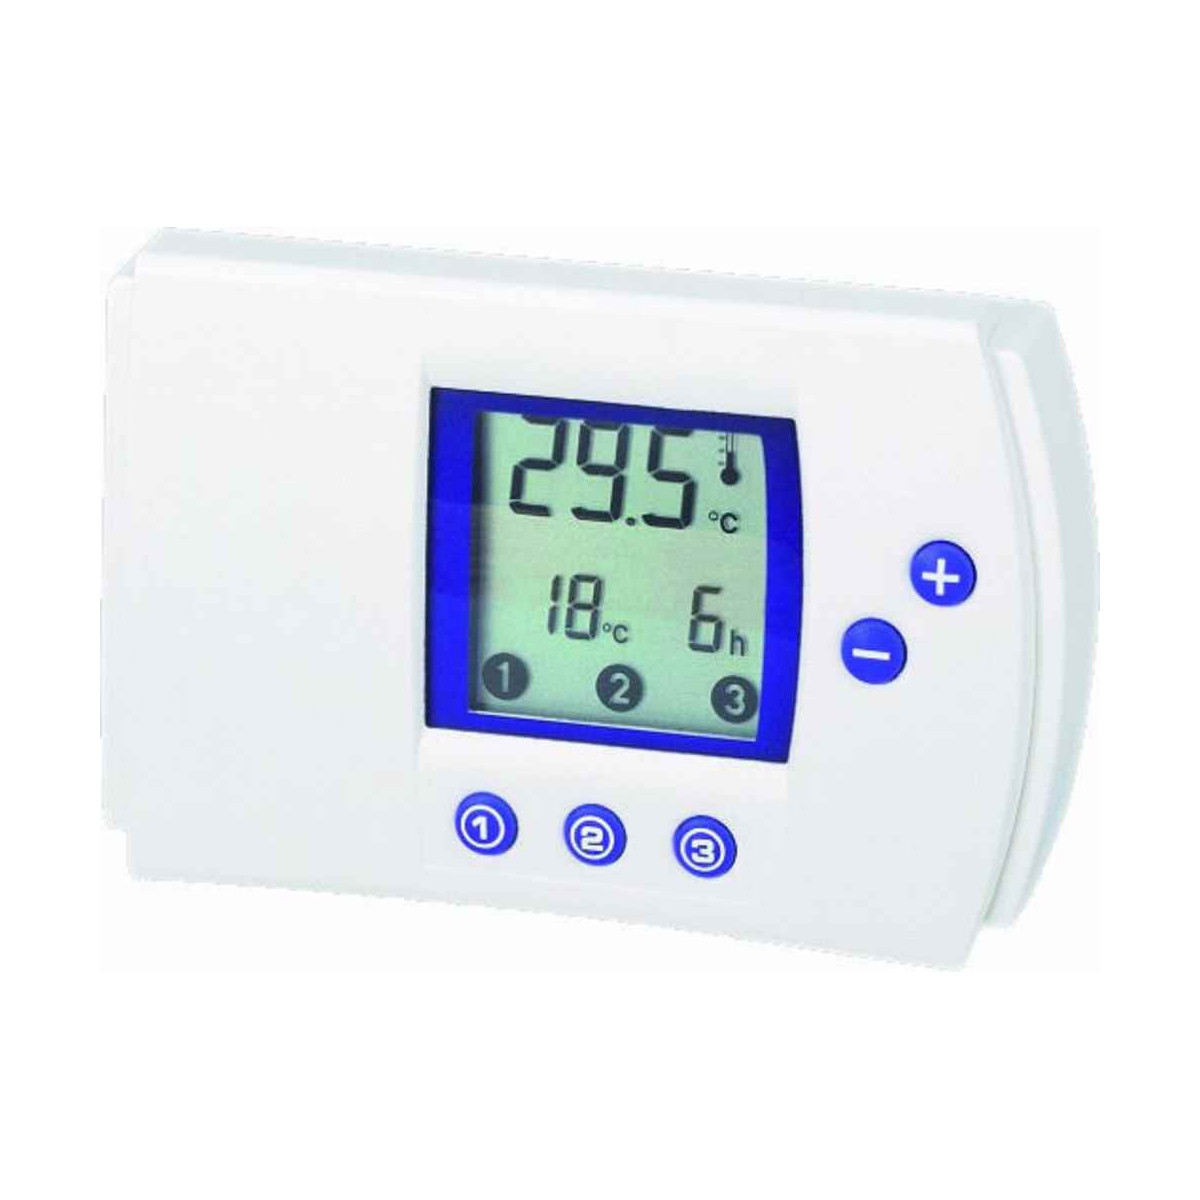 https://store.mectronica.it/2985-large_ebay/termostato-digitale-riscaldamento-condizionamento-elettronico-programmabile.jpg